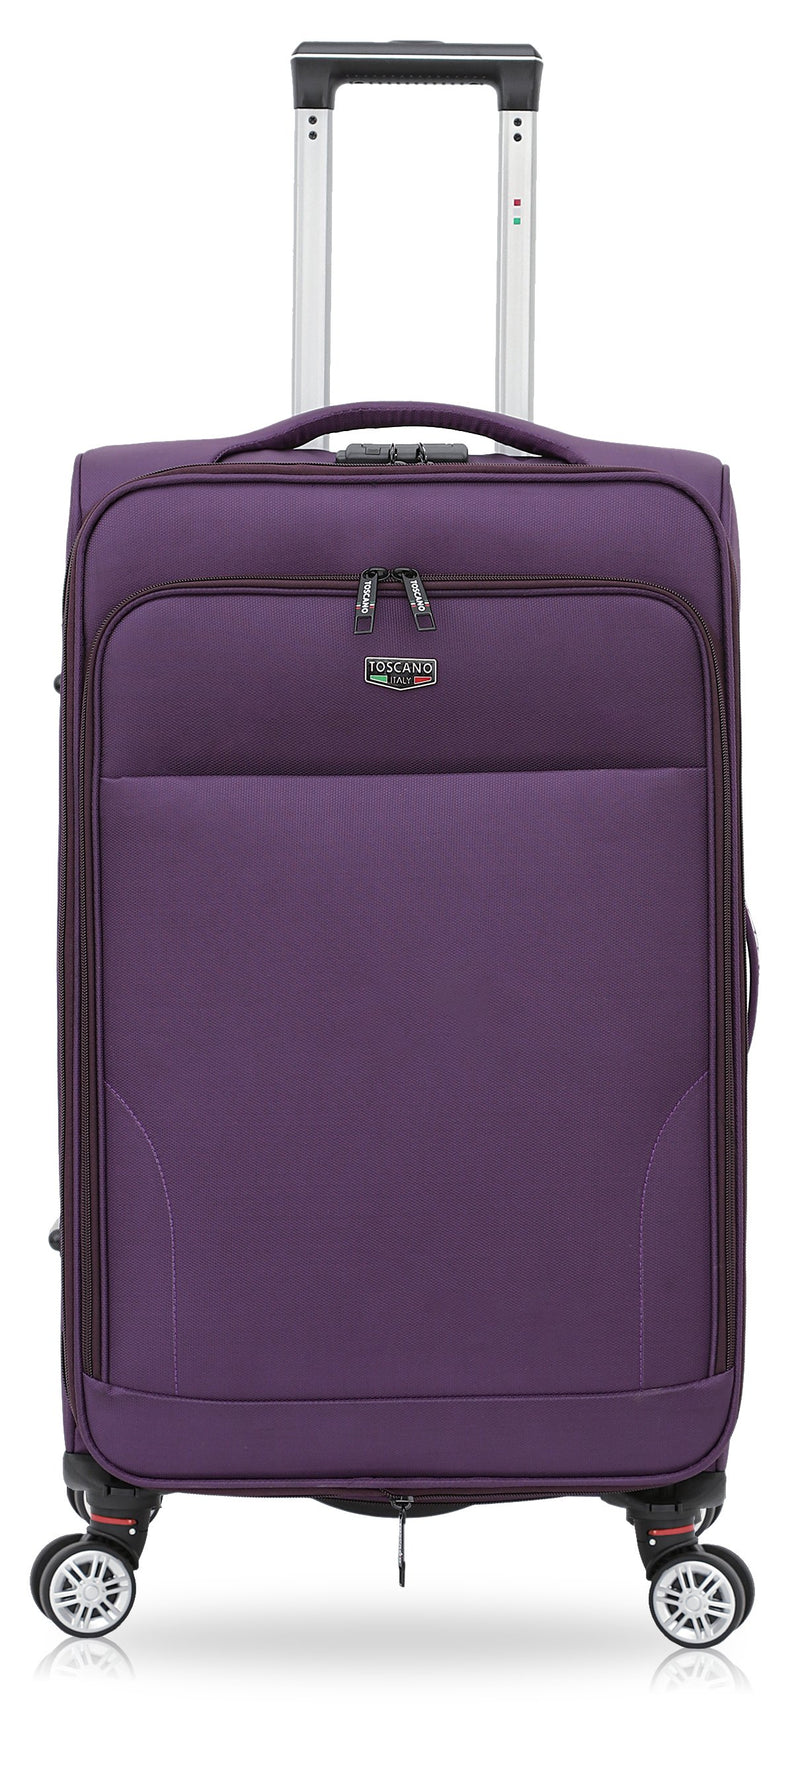 TOSCANO 32-inch Ricerca Large Luggage Suitcase